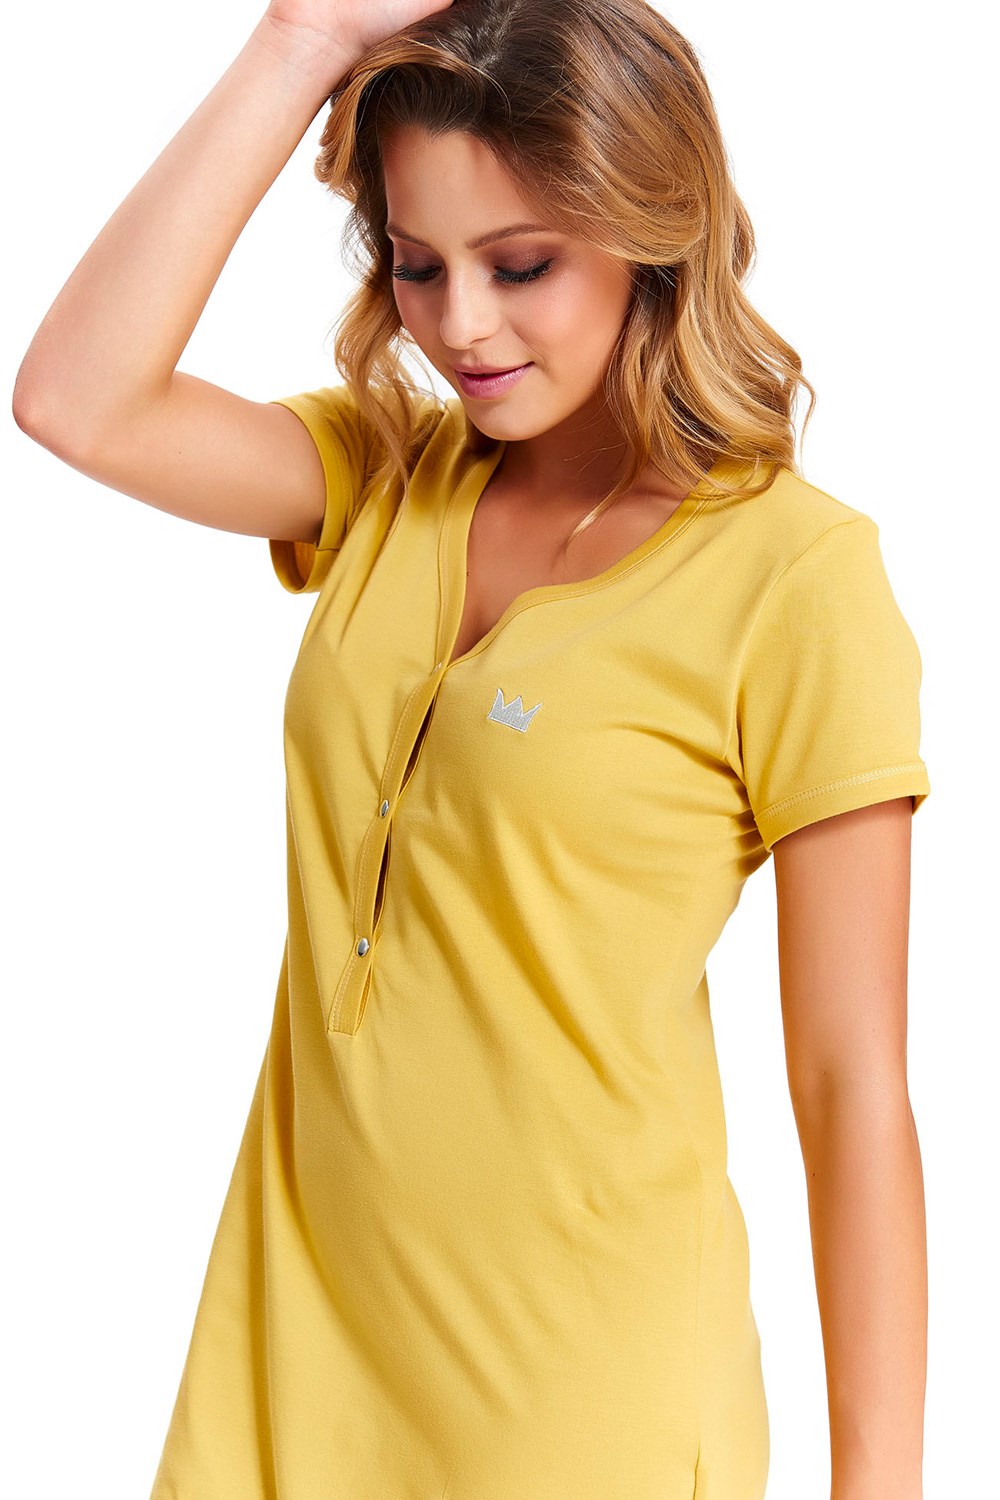 Noční košile Dn-nightwear TCB.9505 - Výprodej